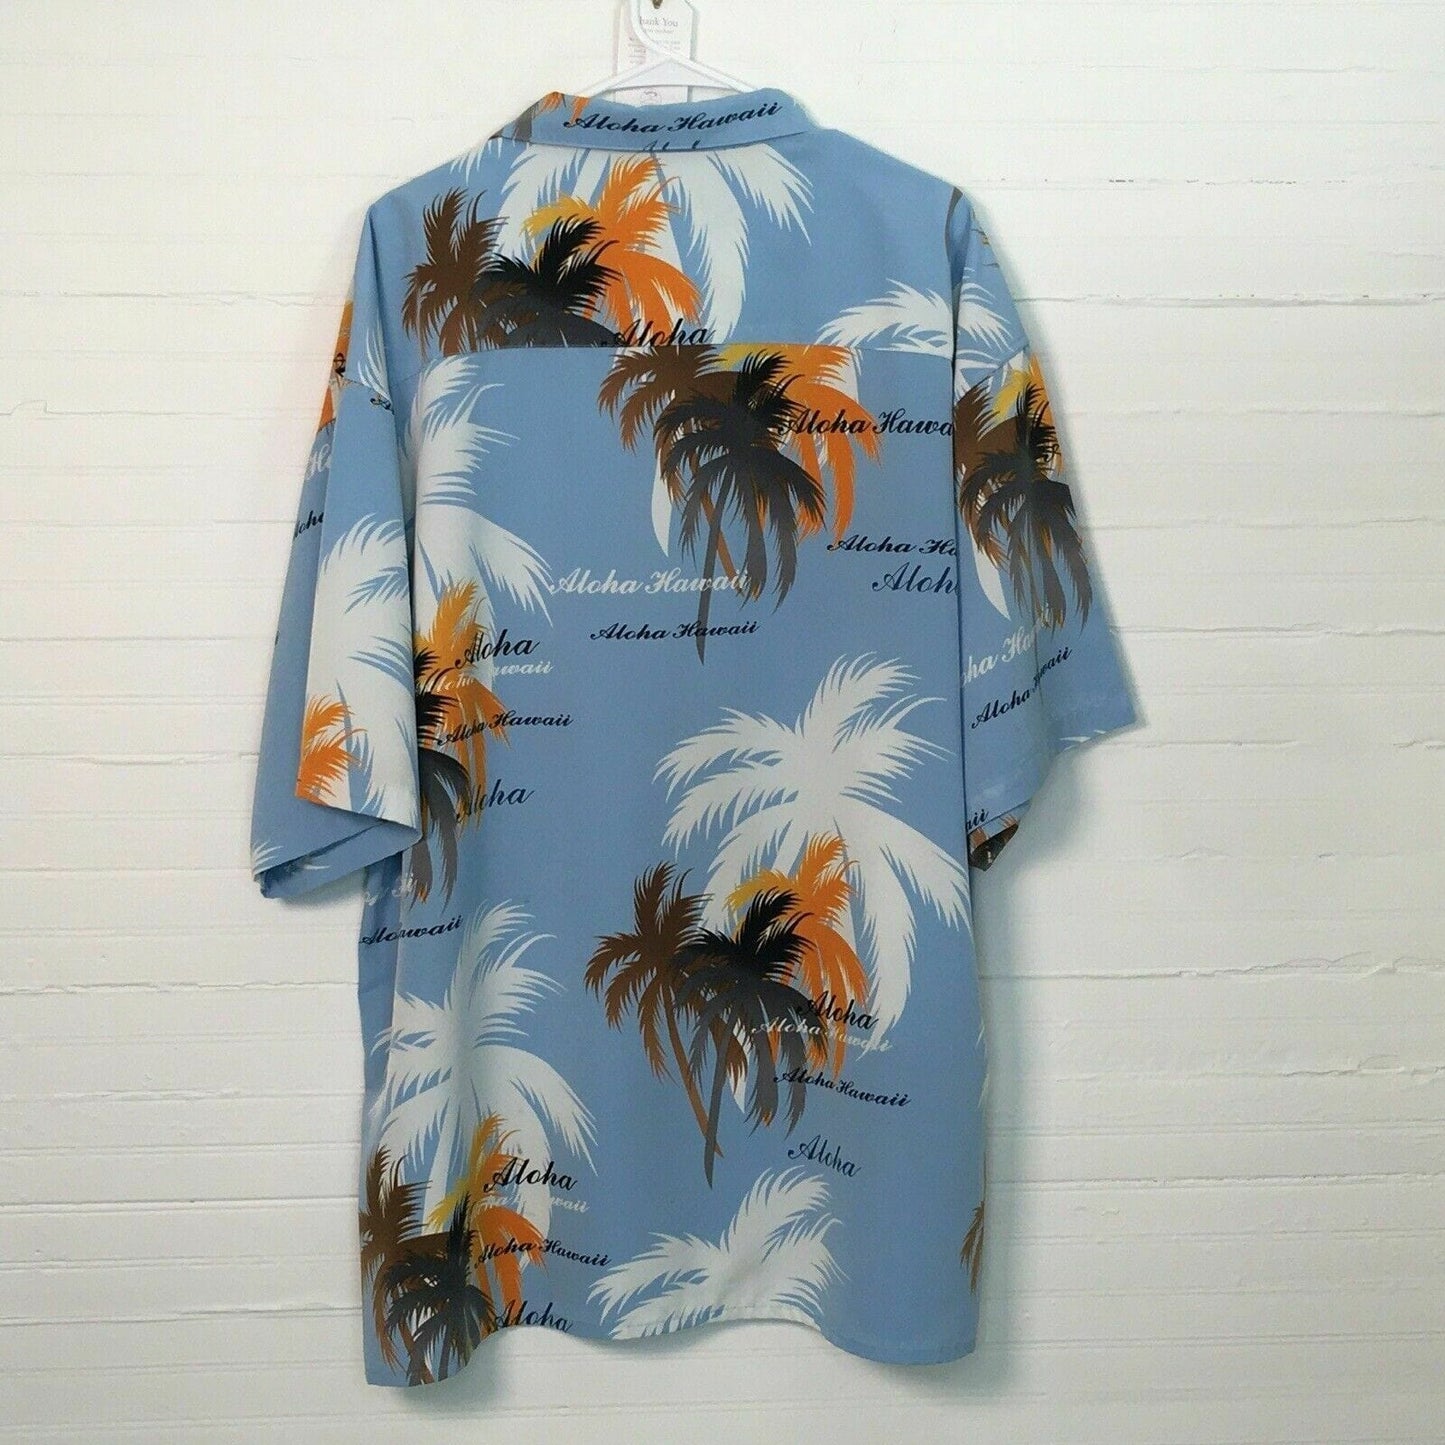 Eye-catching Koman Mens Hawaiian Shirt - XXL - Light Blue Floral Palm Print - Short Sleeve